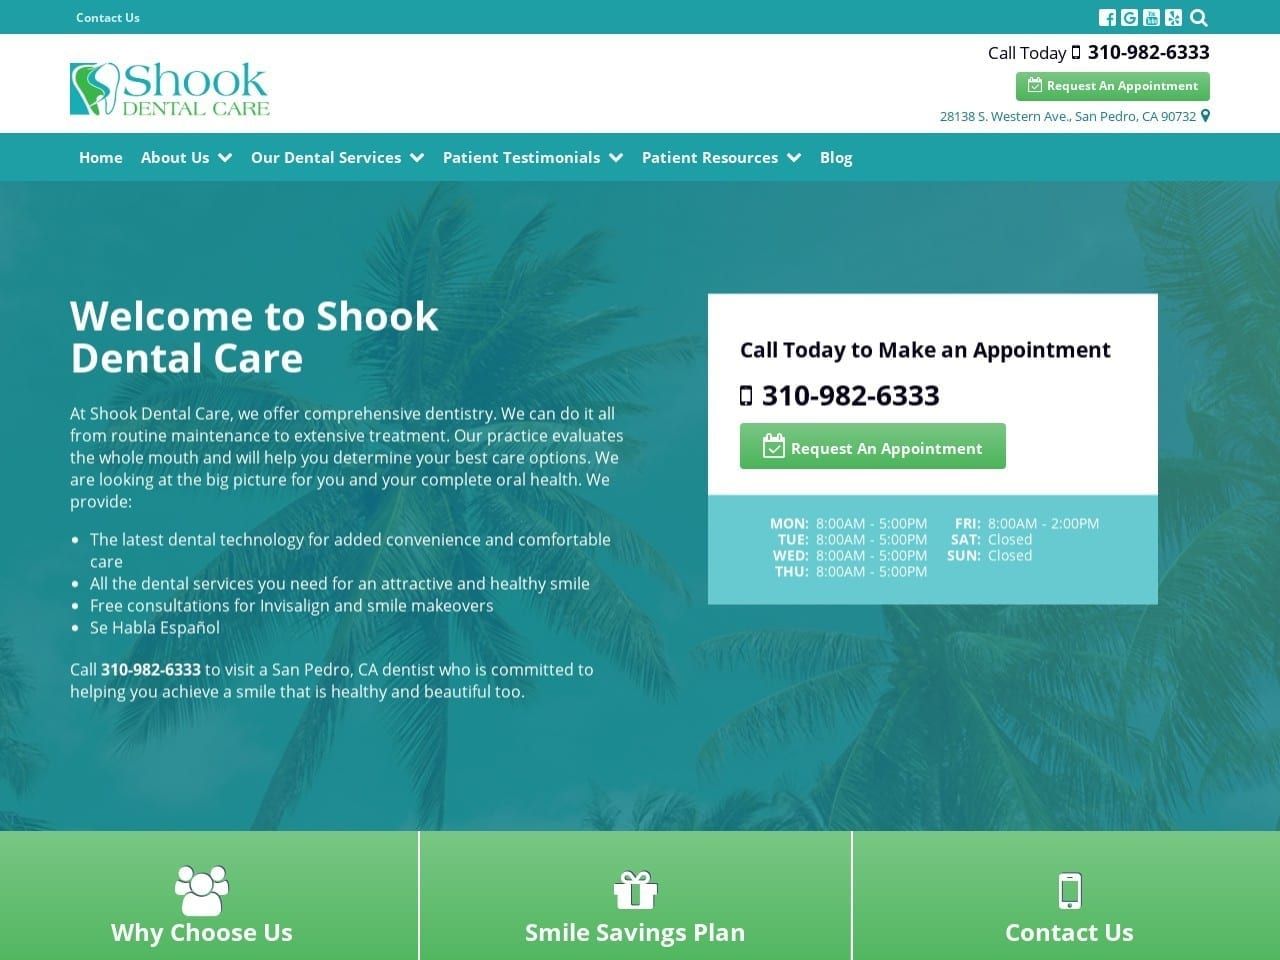 Shook Dental Care Website Screenshot from shookdentalcare.com